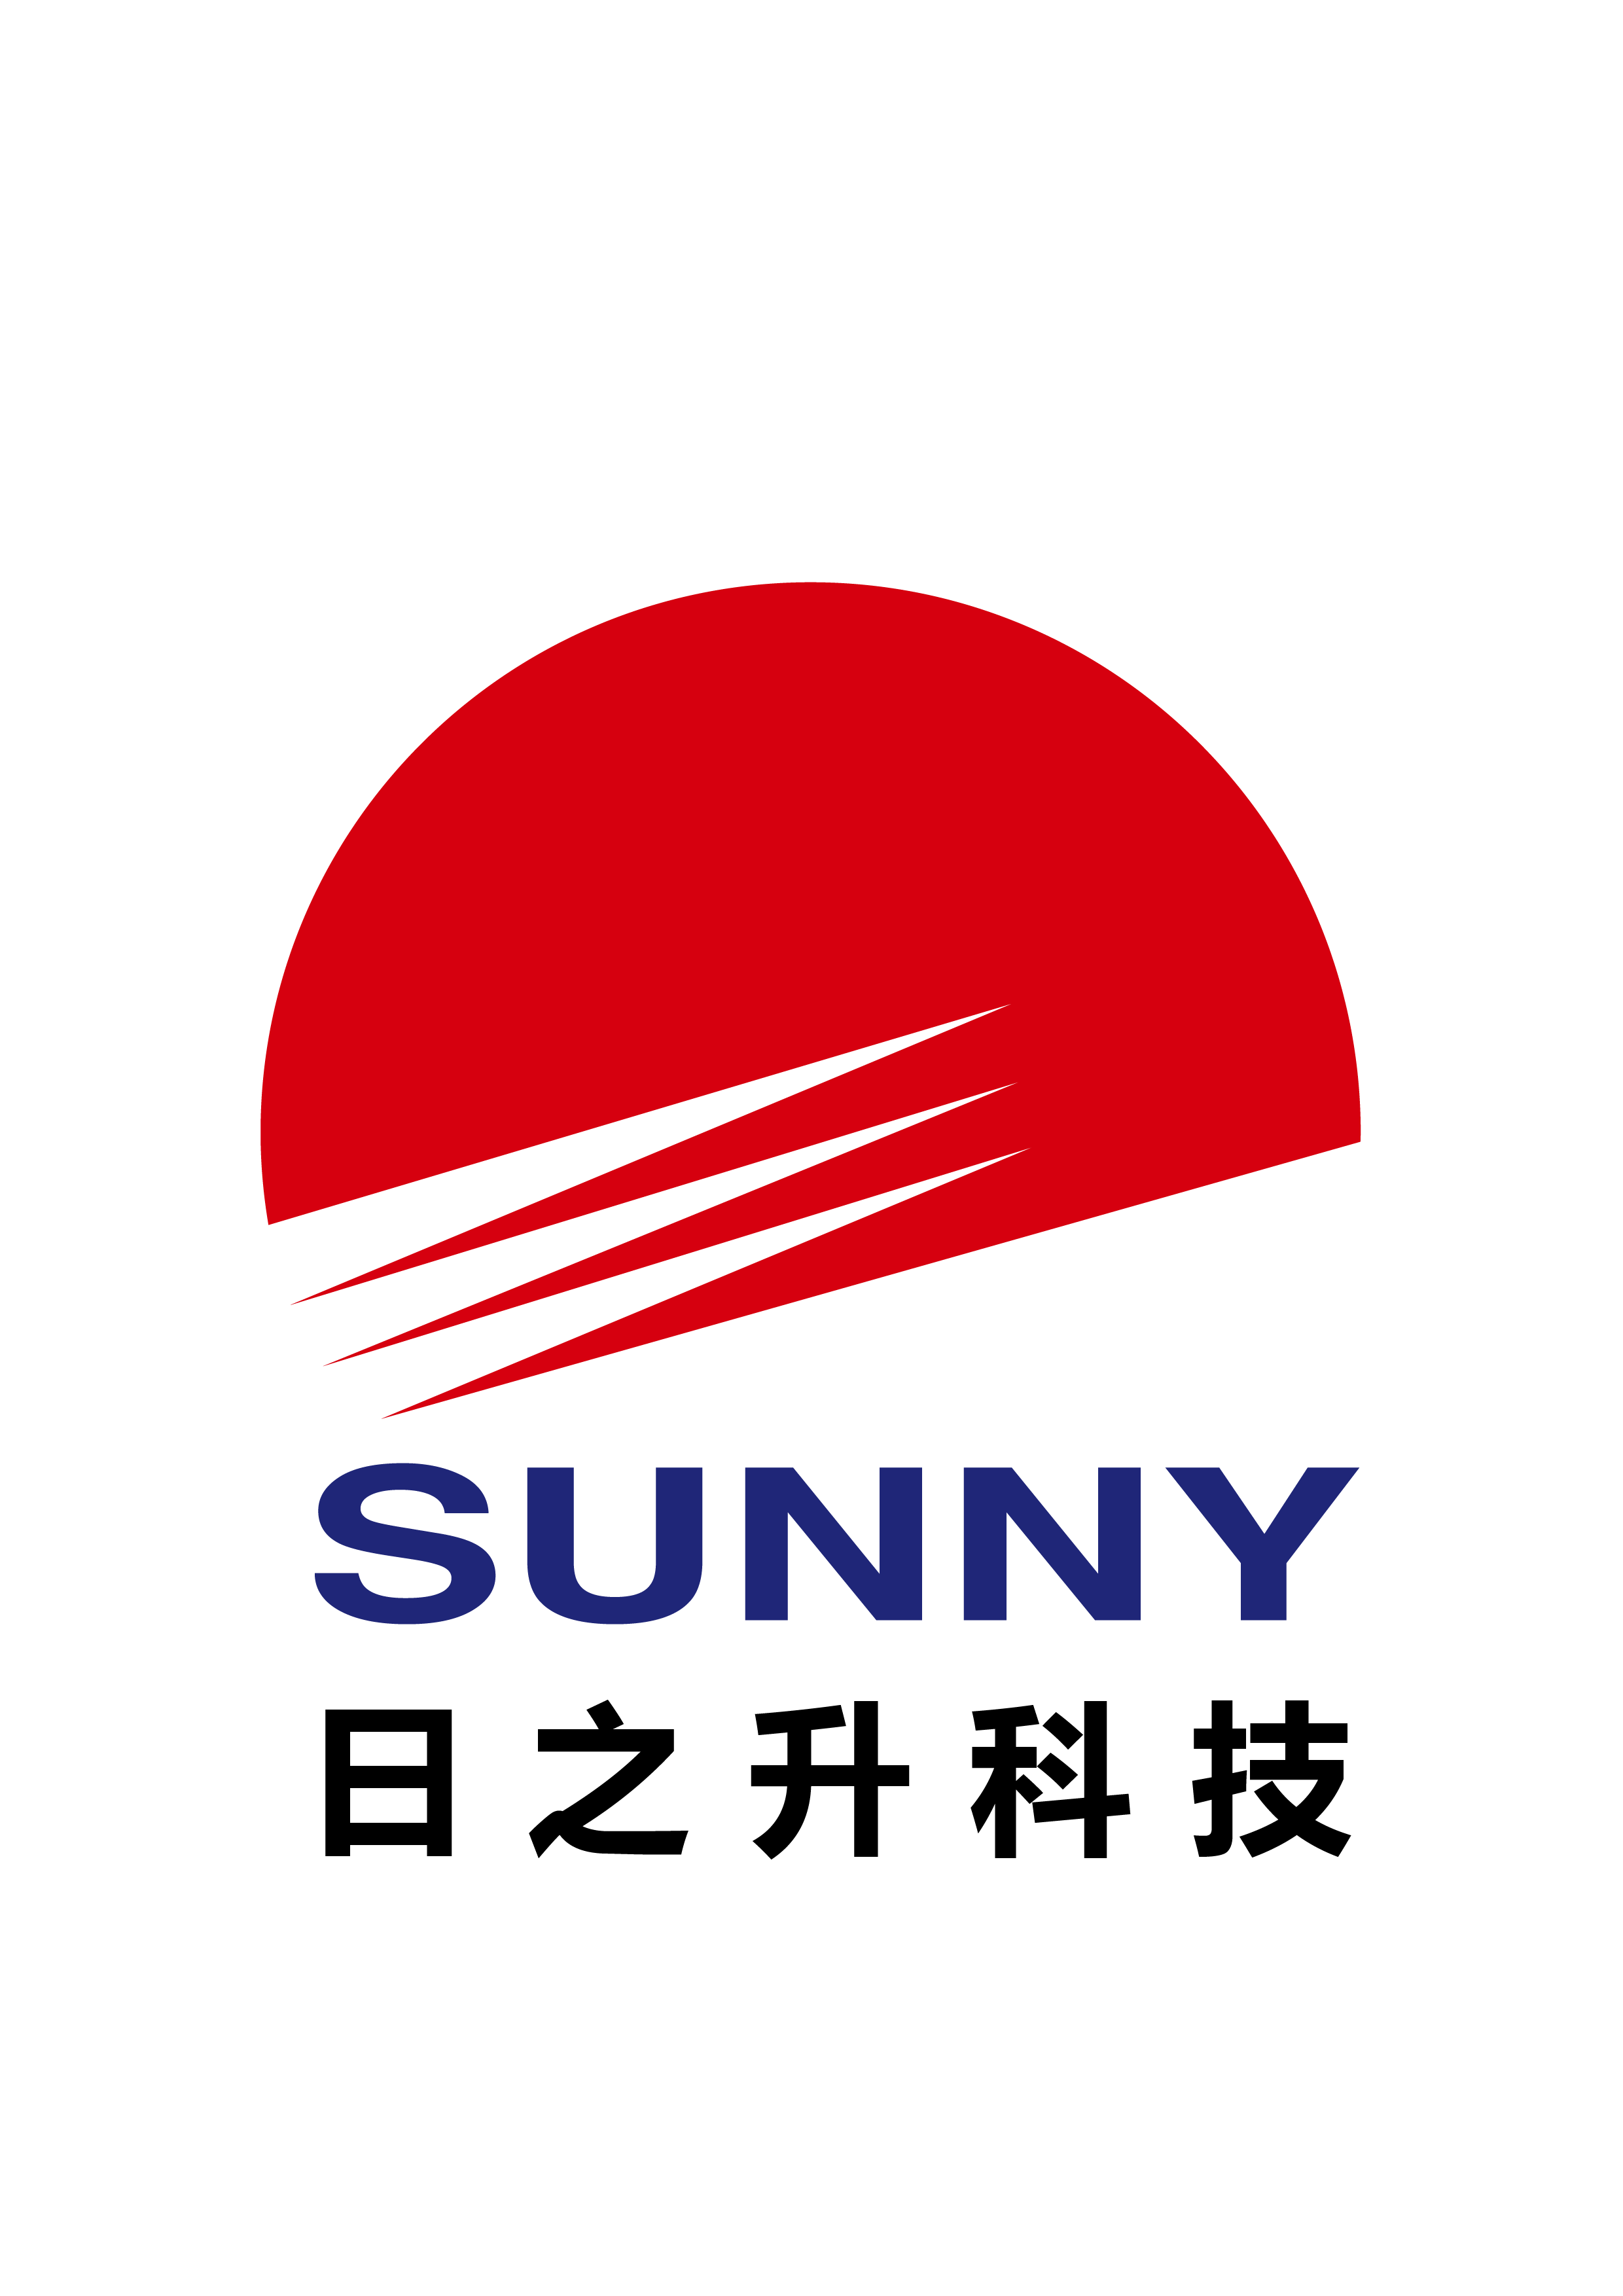 sunny